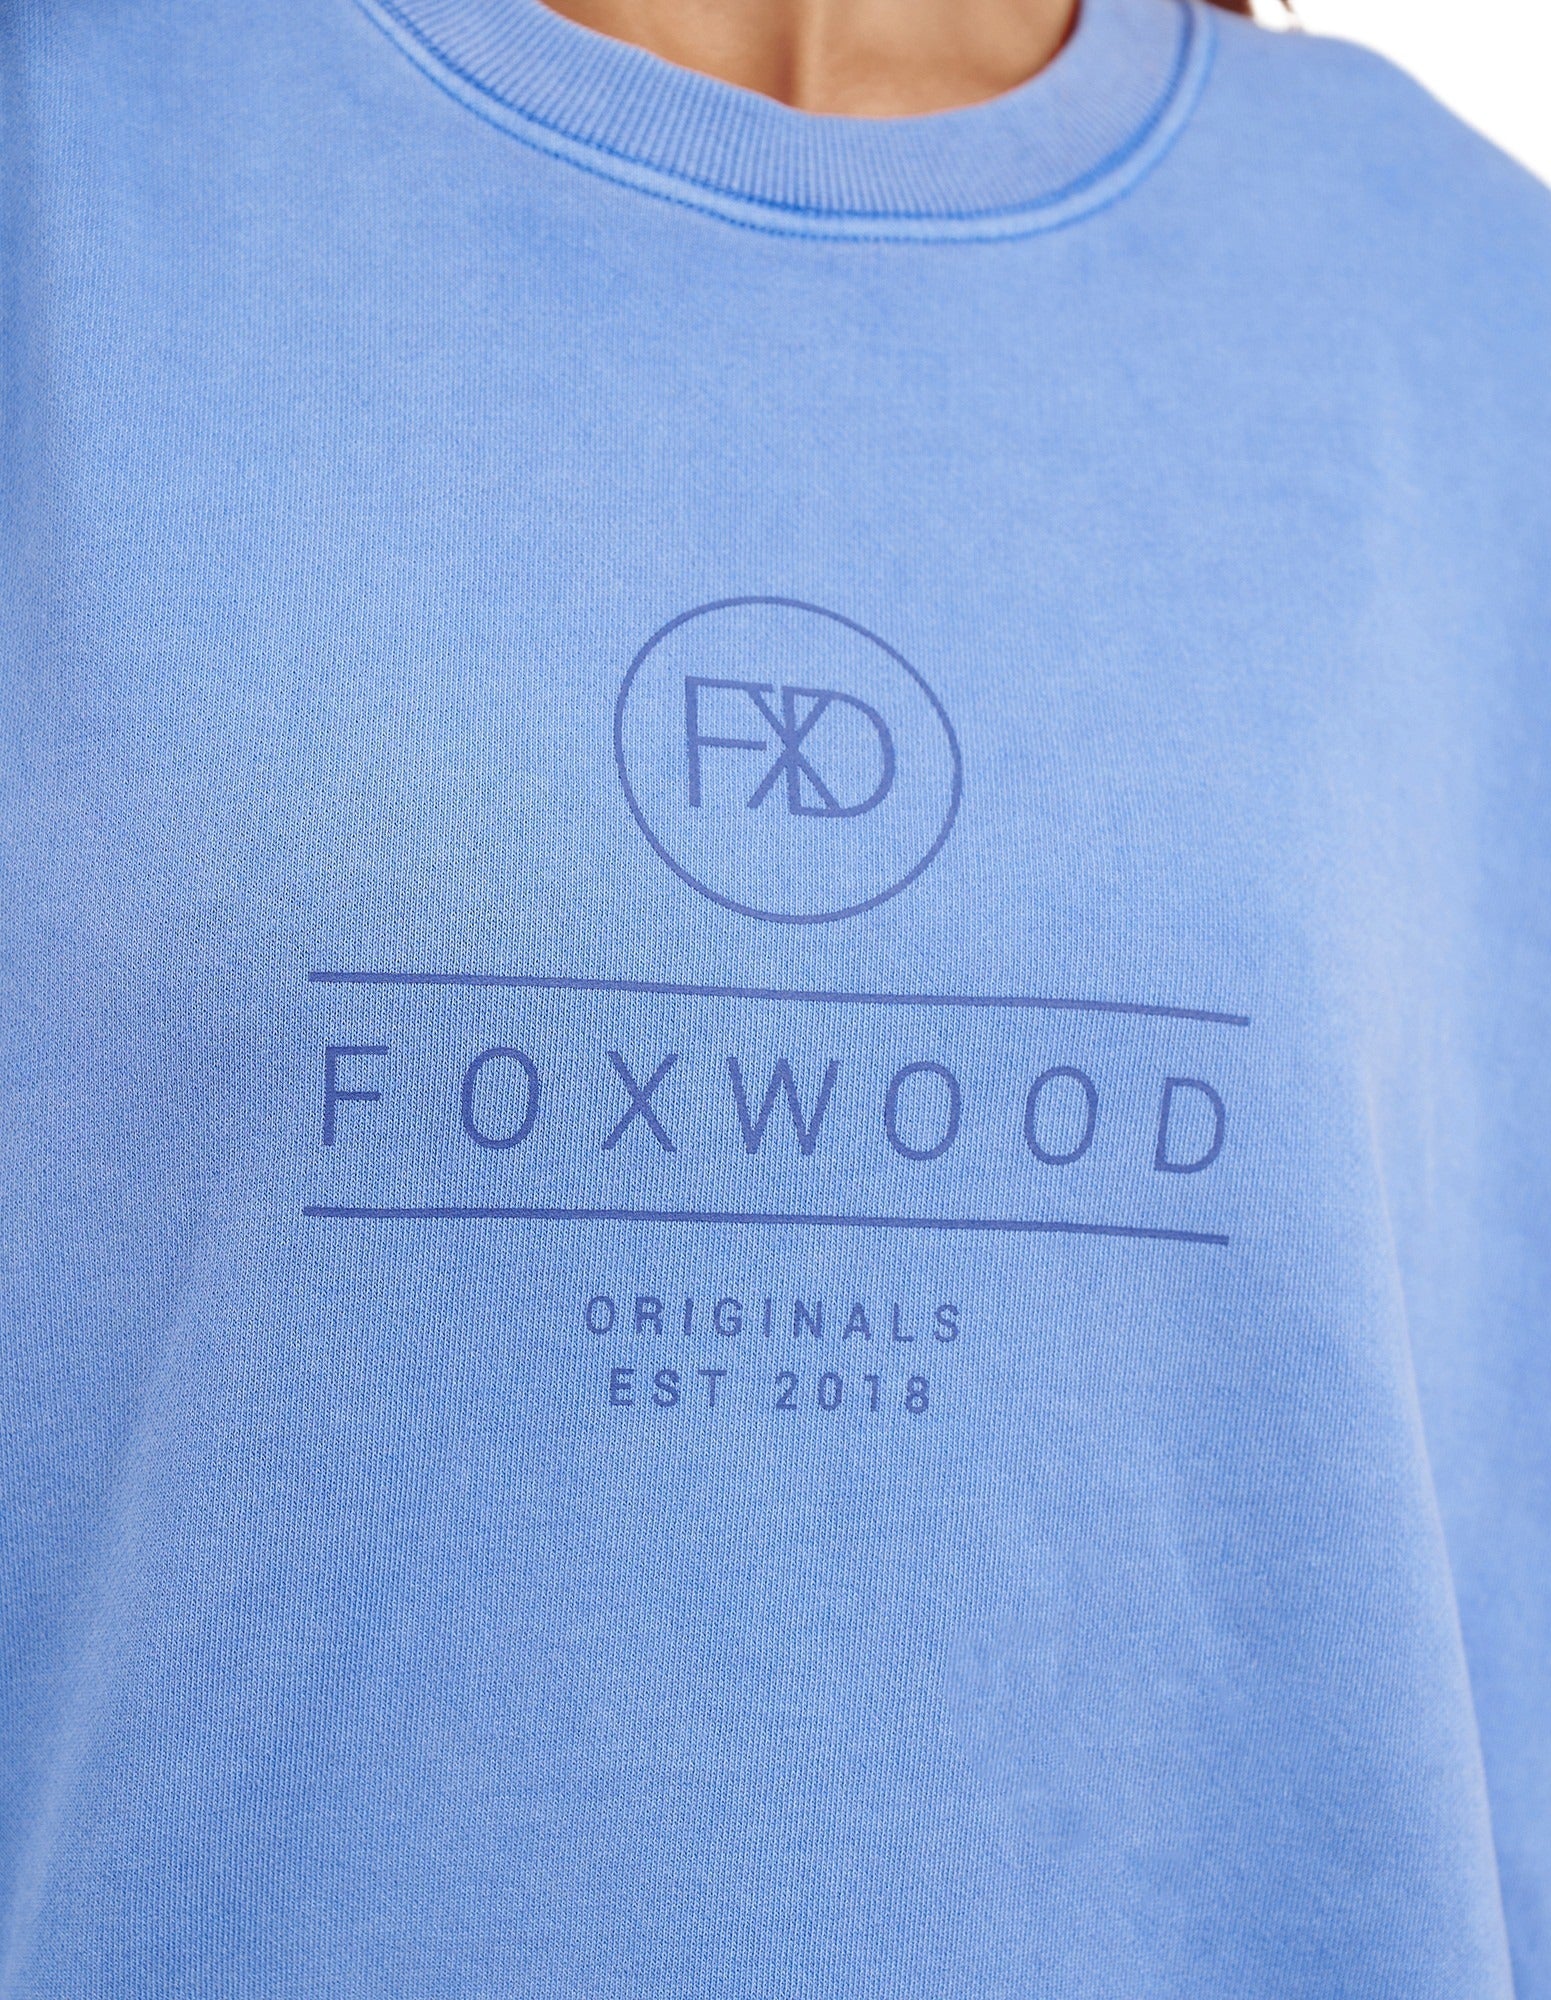 Foxwood Everyday Crew - Blue